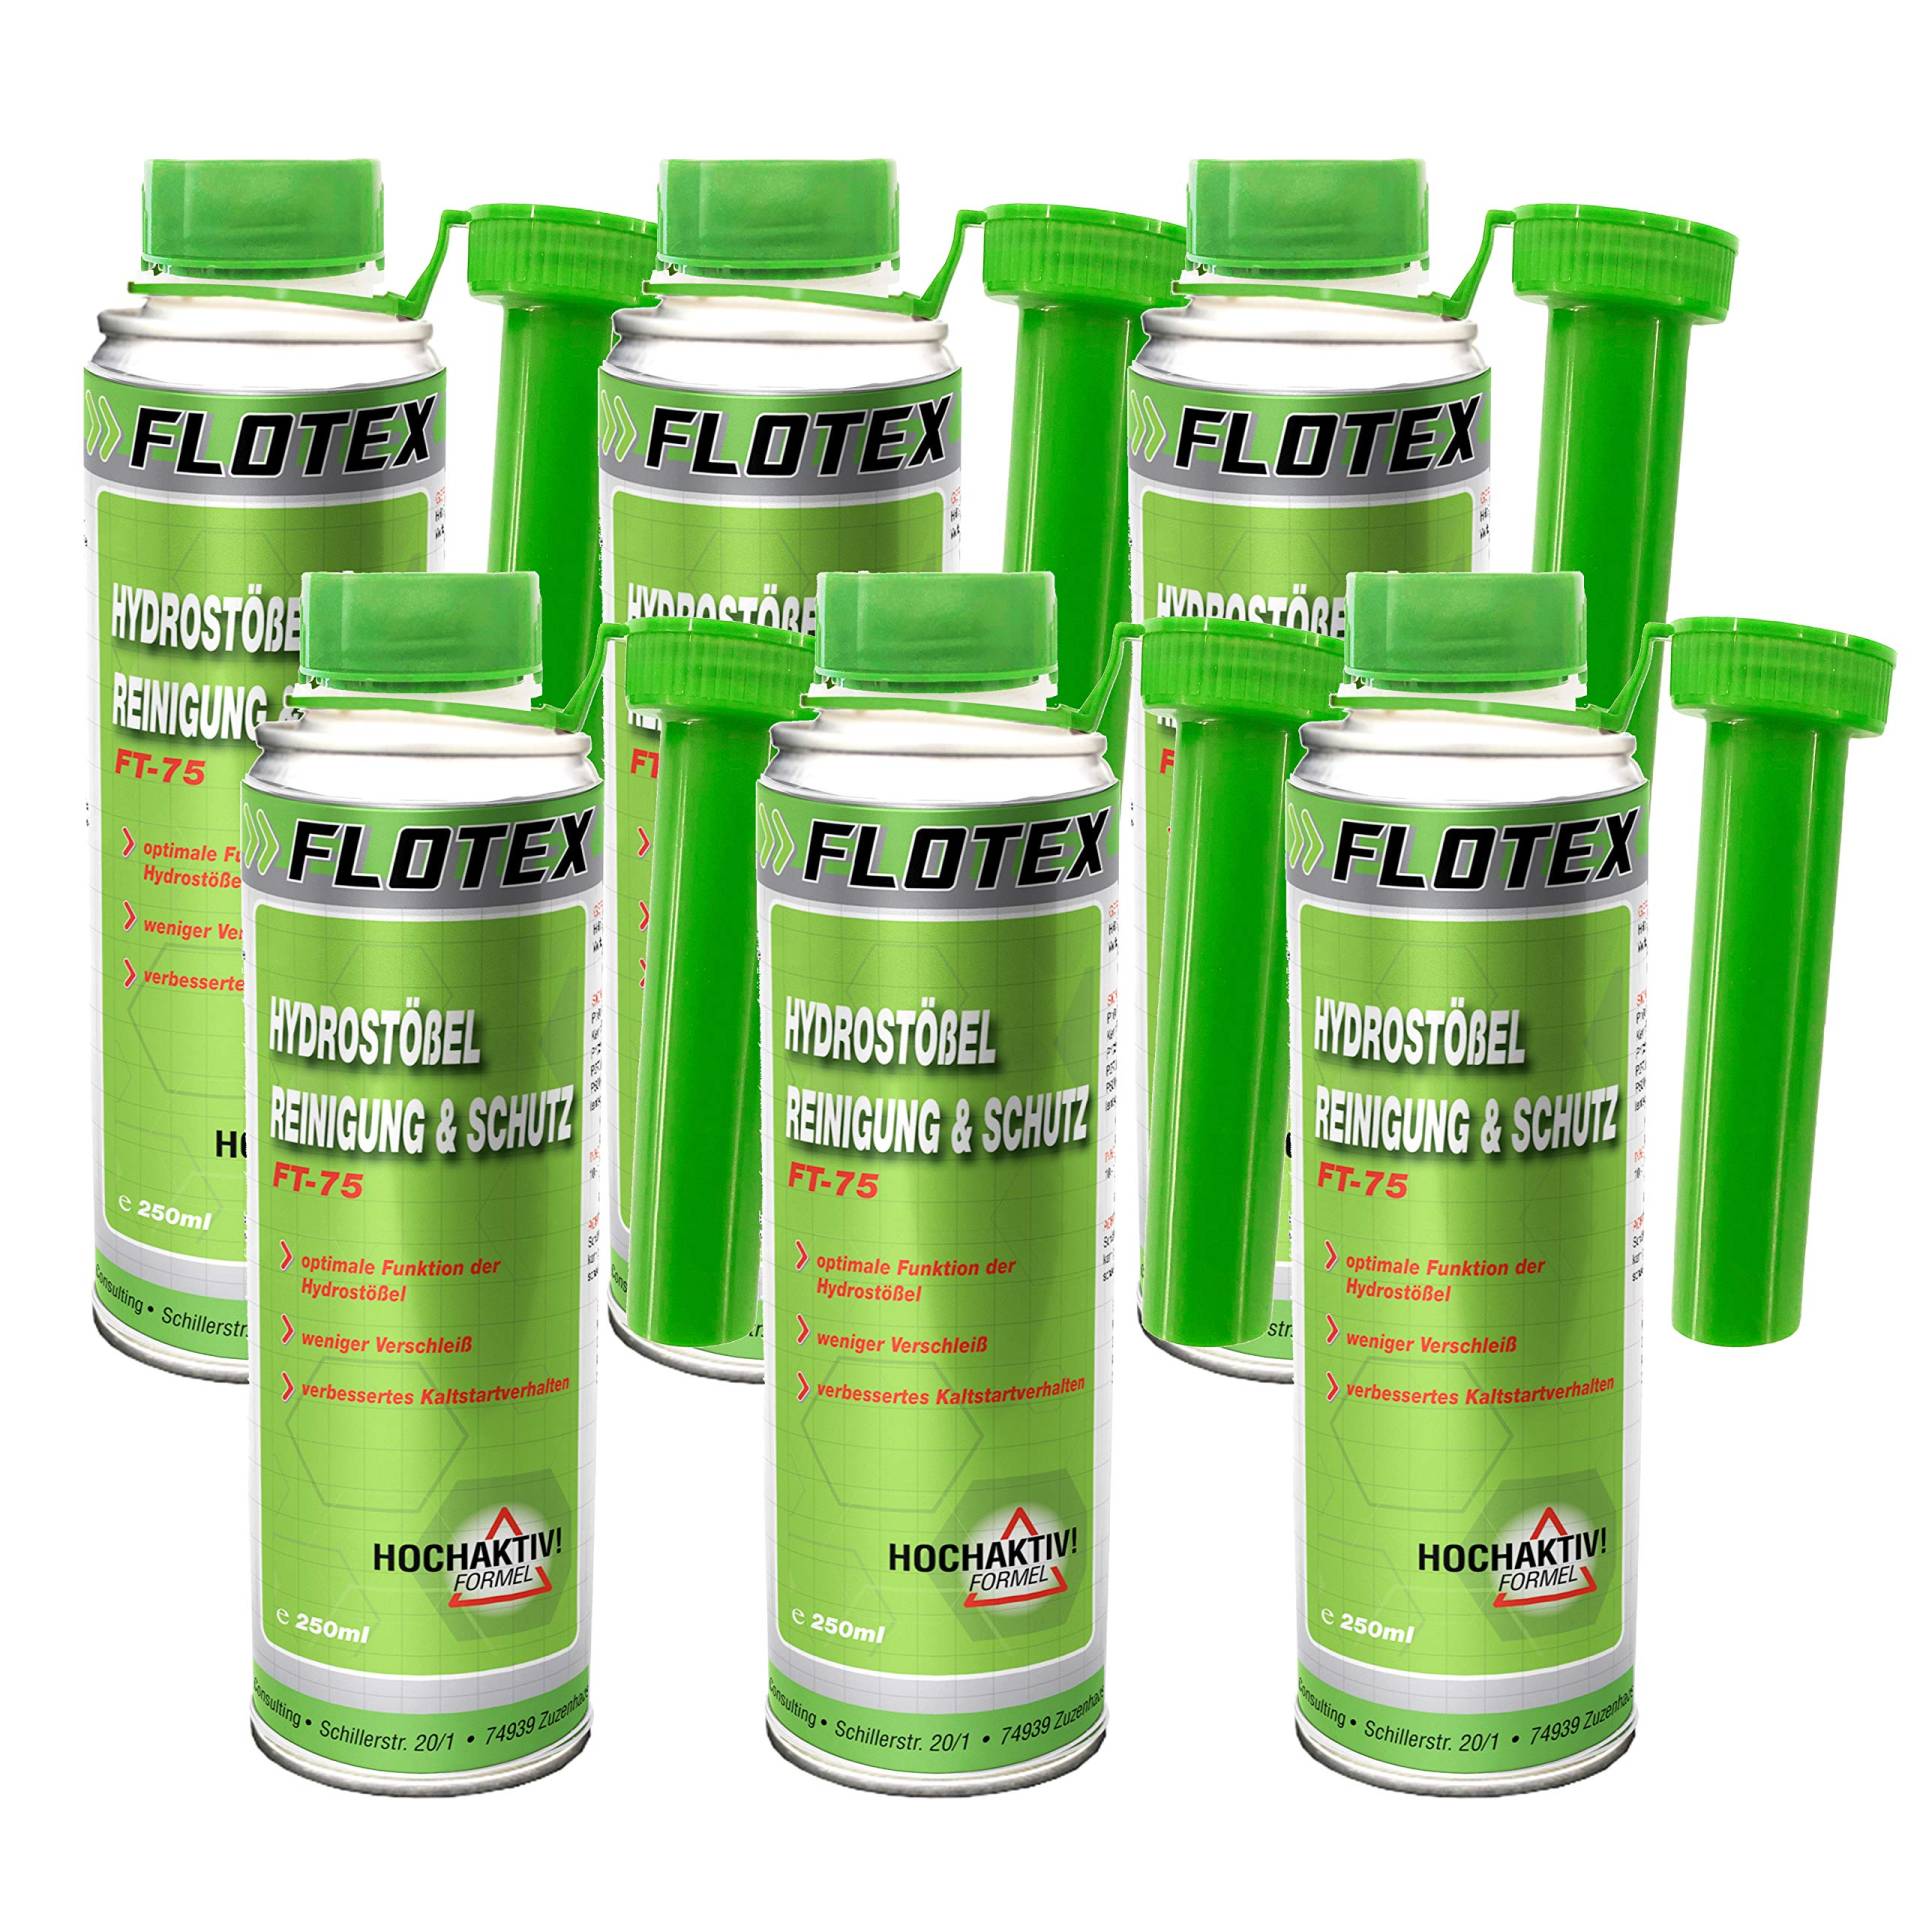 Flotex Hydrostößel Reinigung & Schutz, 6 x 250ml Additiv reinigt Ventilstößel von Flotex